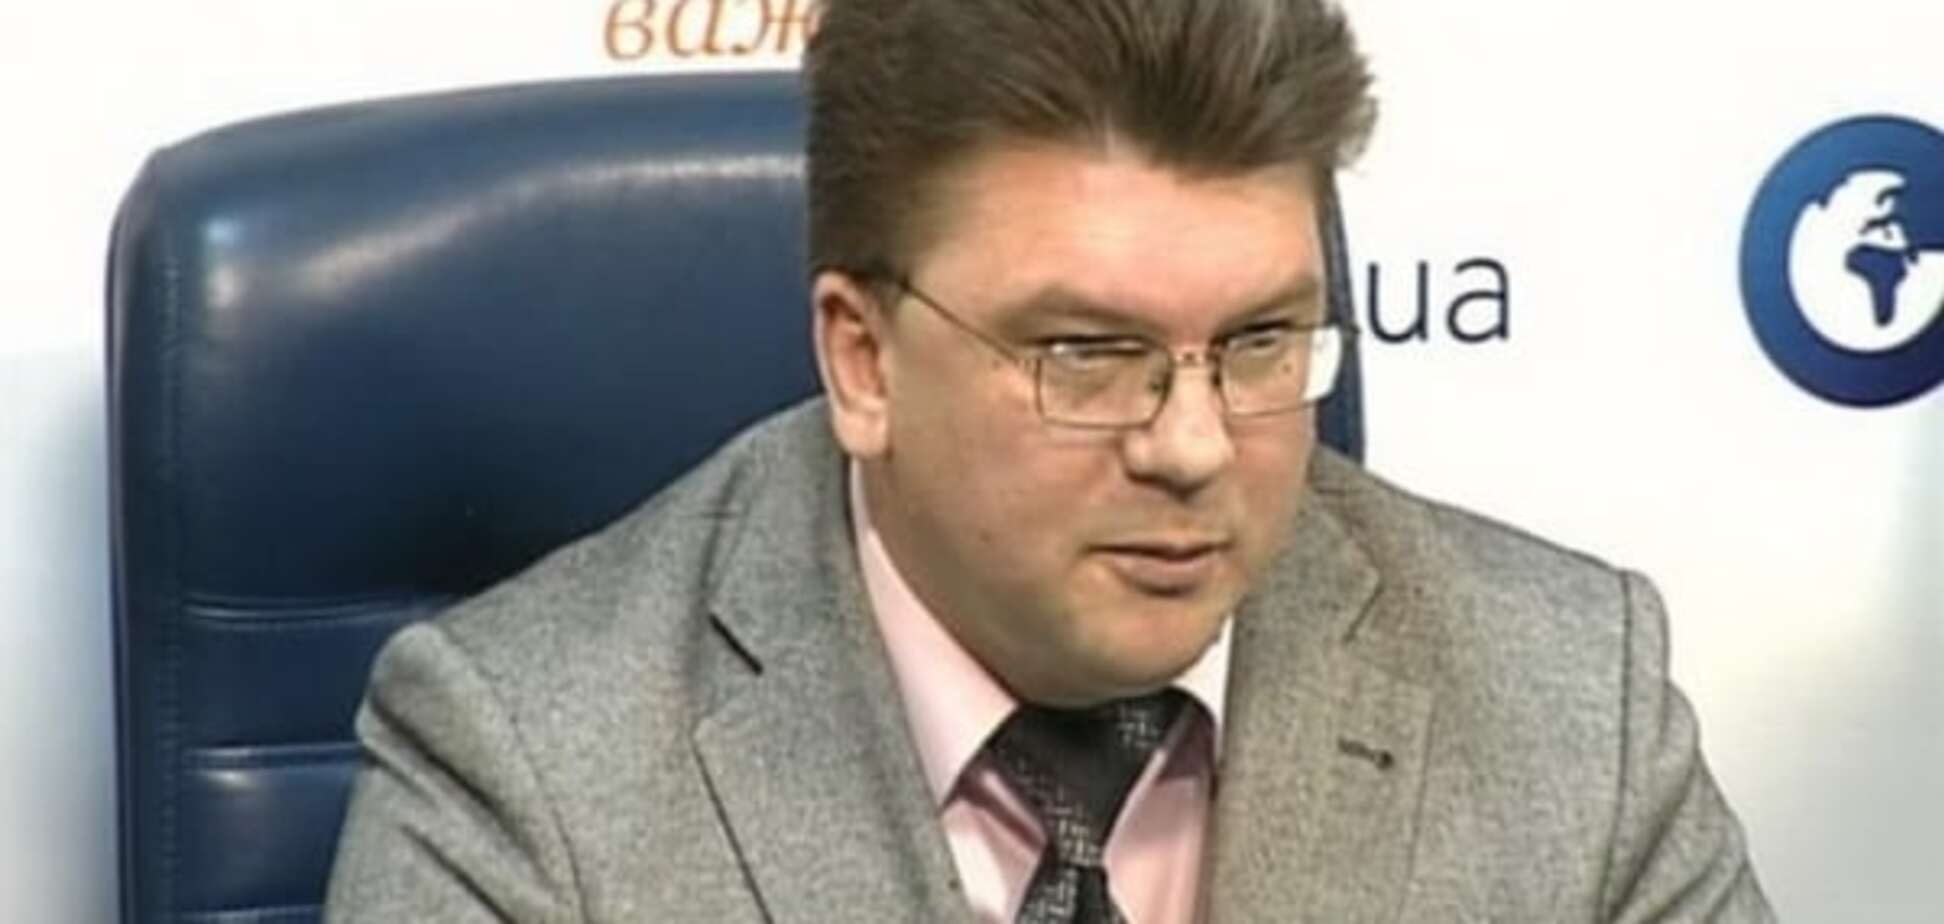 Міністр спорту України: дізнався, що збірна тренується в Росії - волосся дибки стало